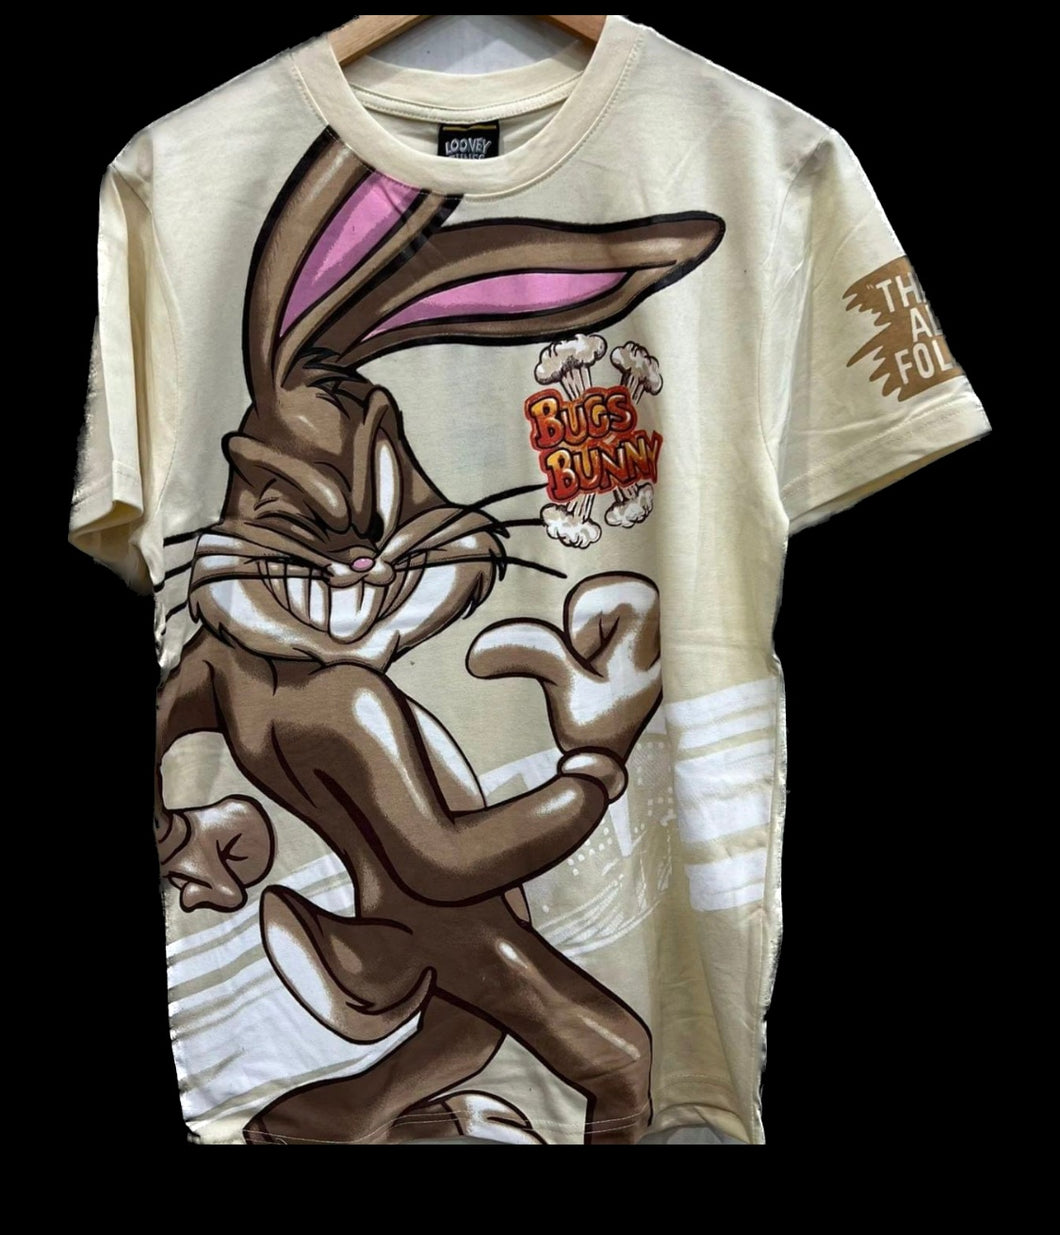 Bad ass Bunny T-shirt